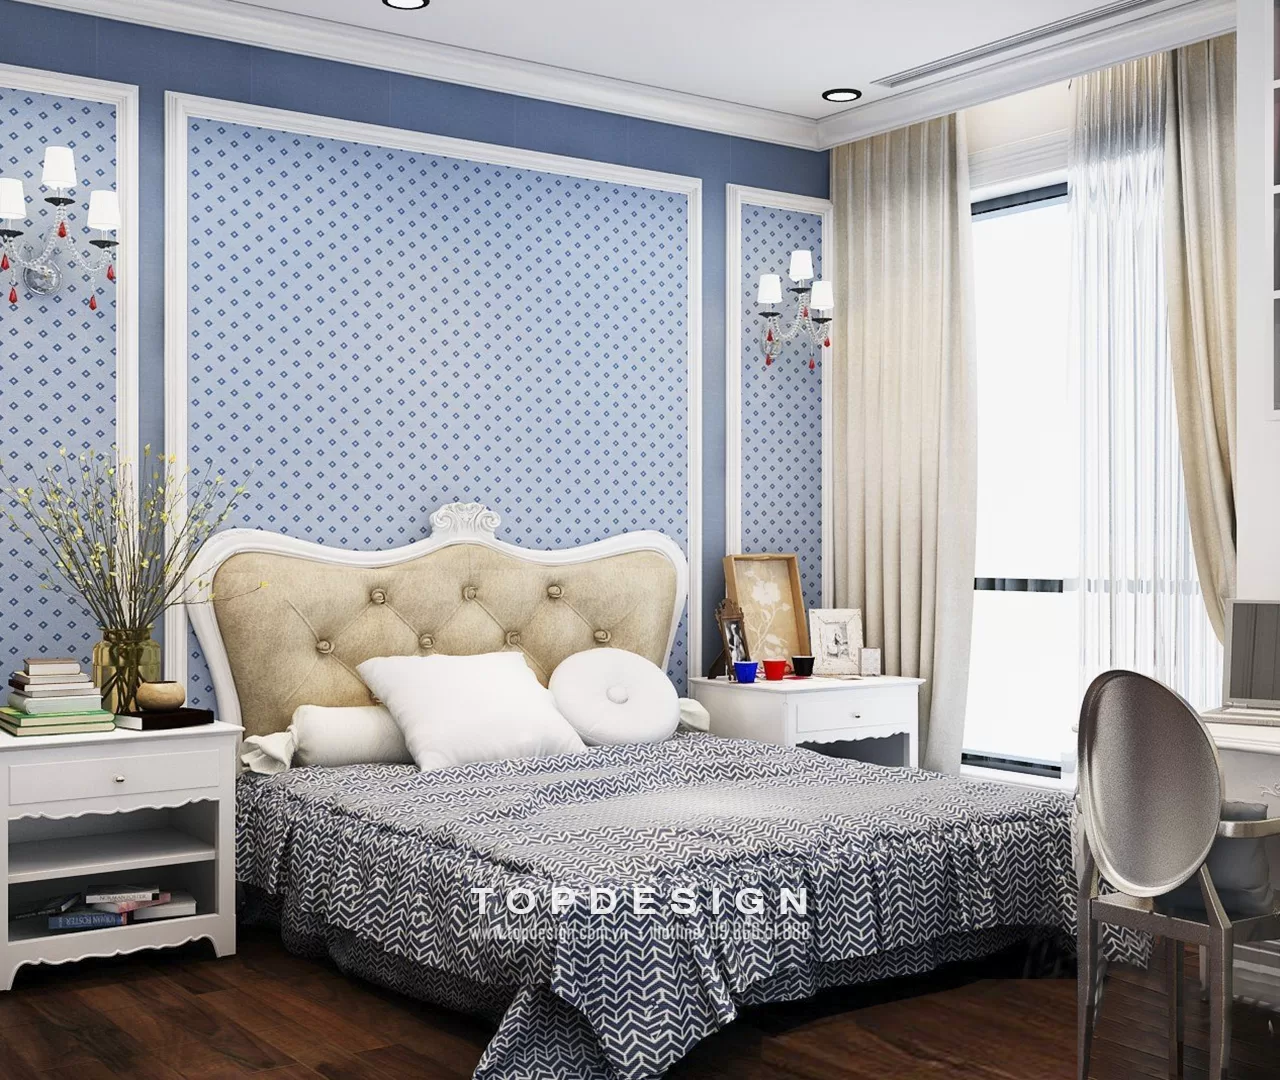 Thiết kế nội thất nhà phố tân cổ điển - TOPDESIGN - 27